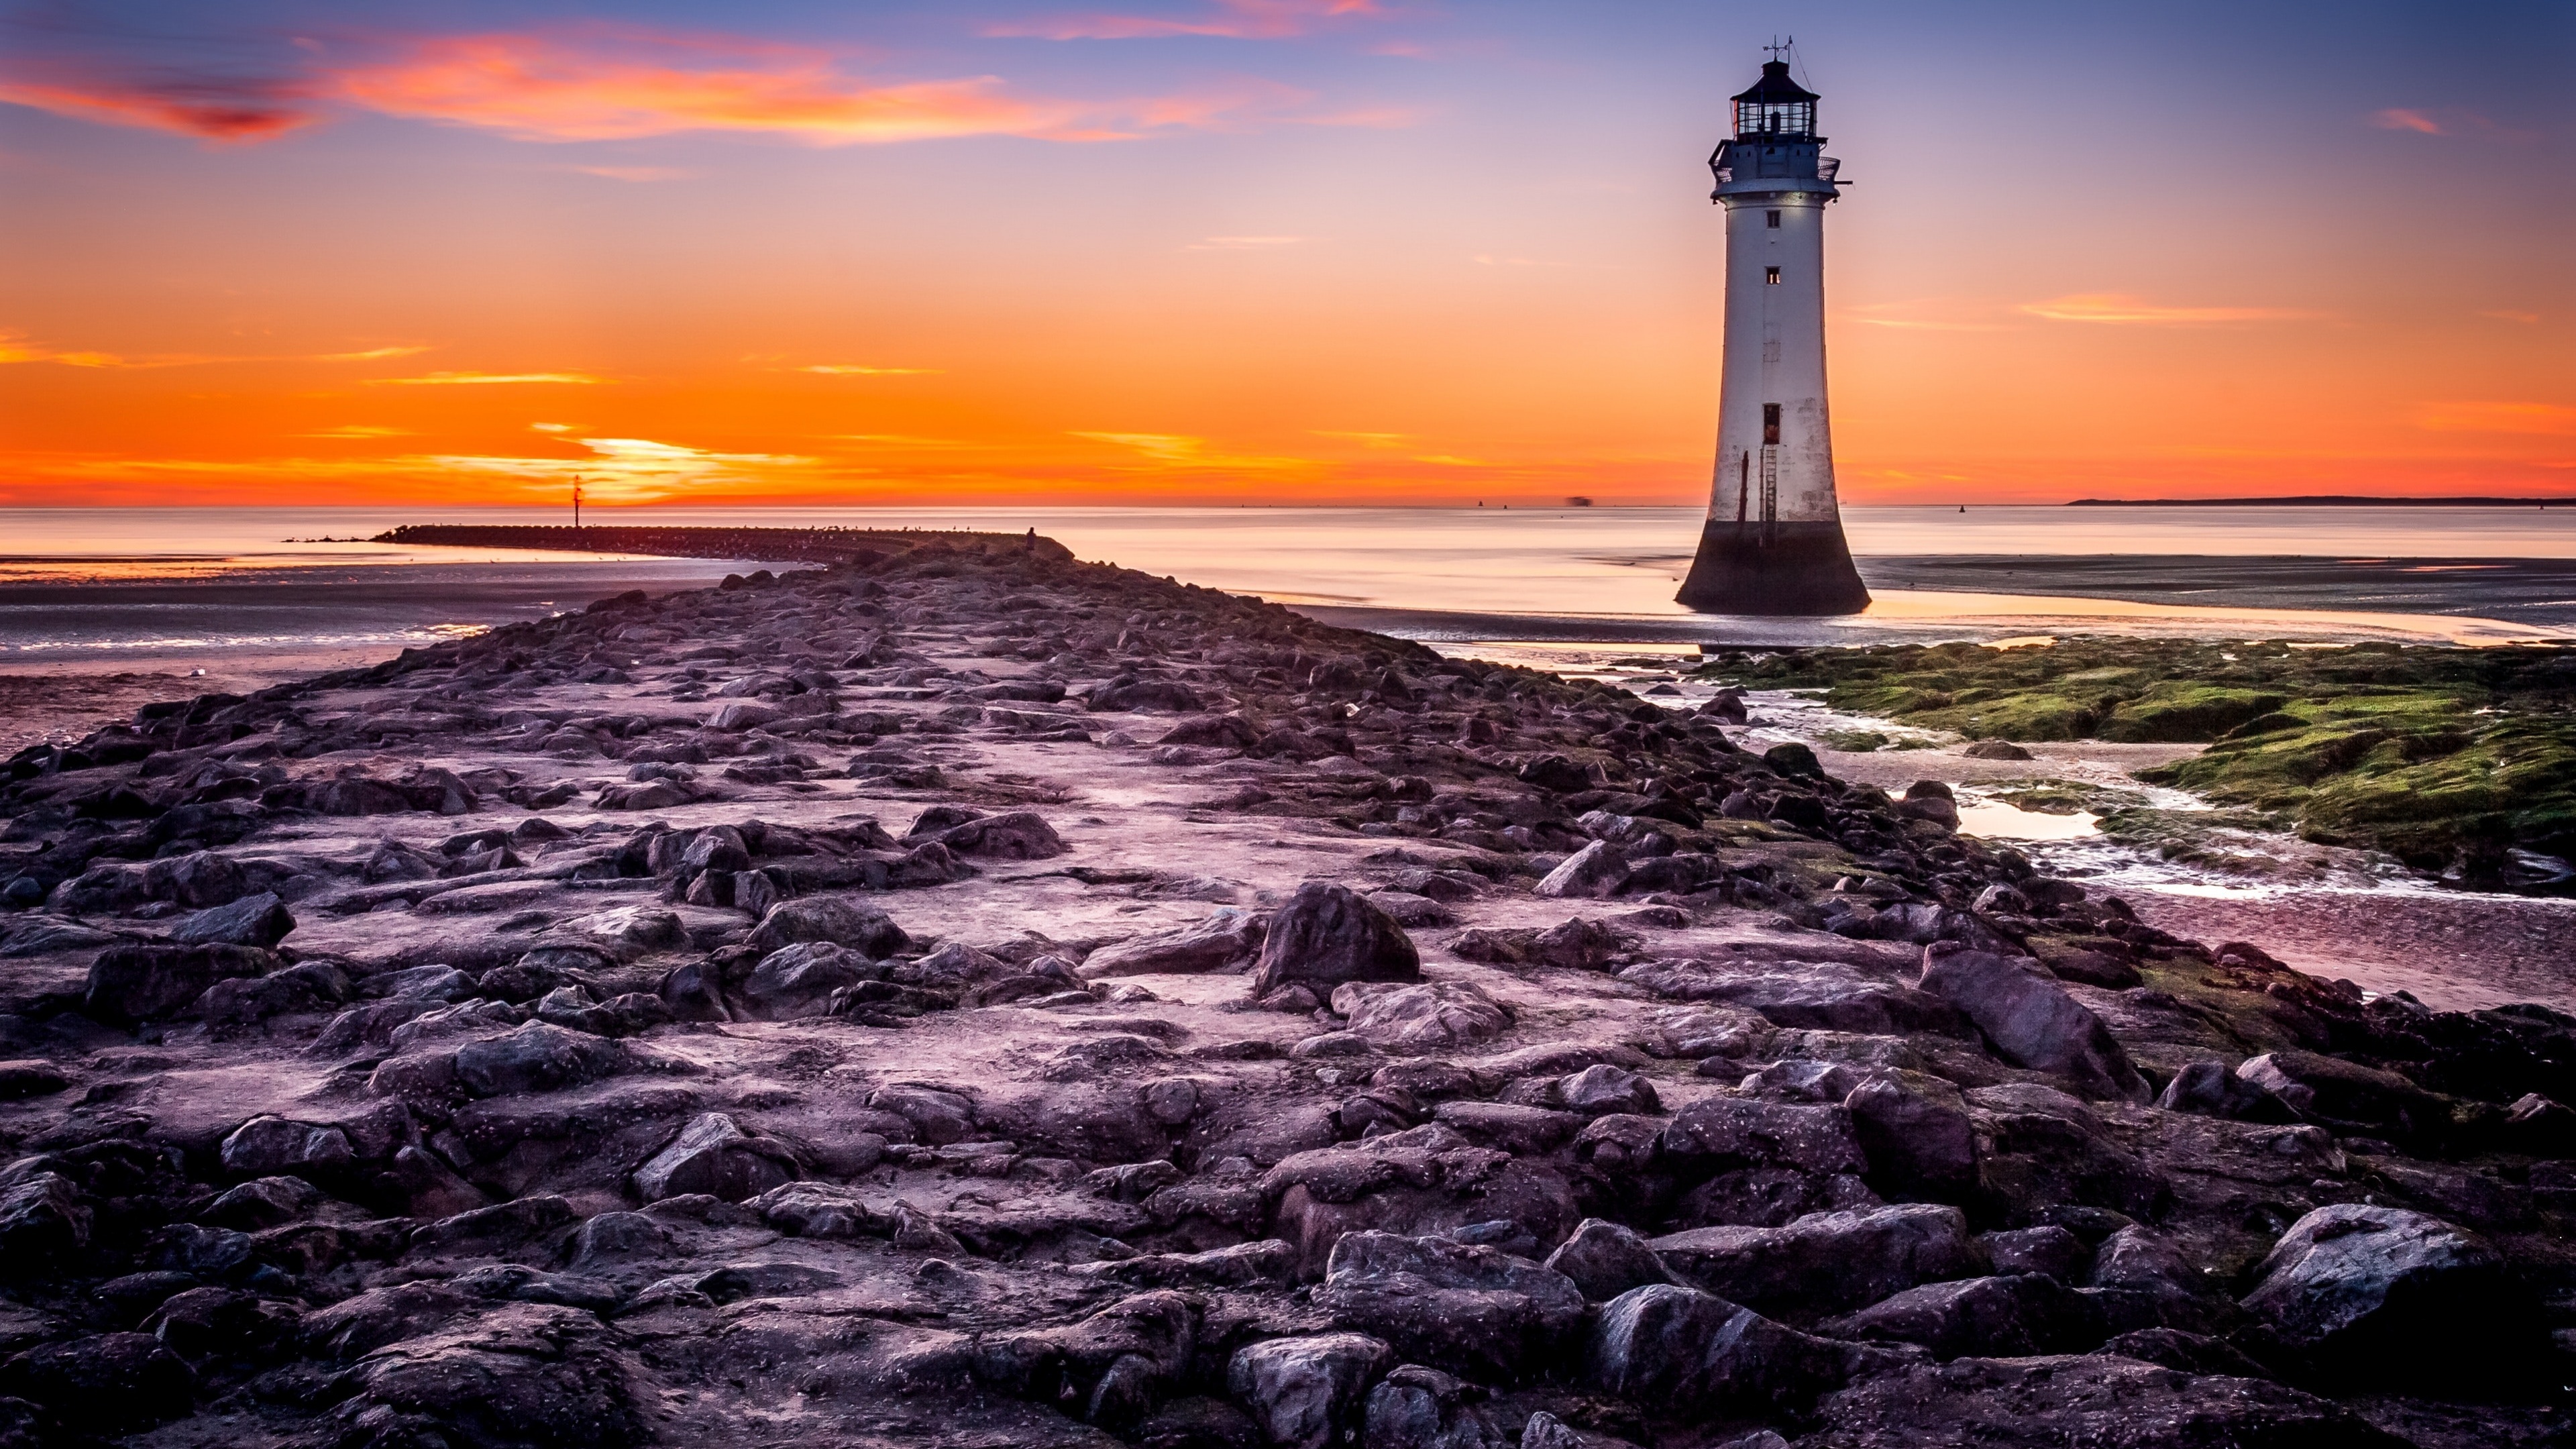 Lighthouse, 4K wallpaper, Rocky coast, Nature's beauty, 3840x2160 4K Desktop